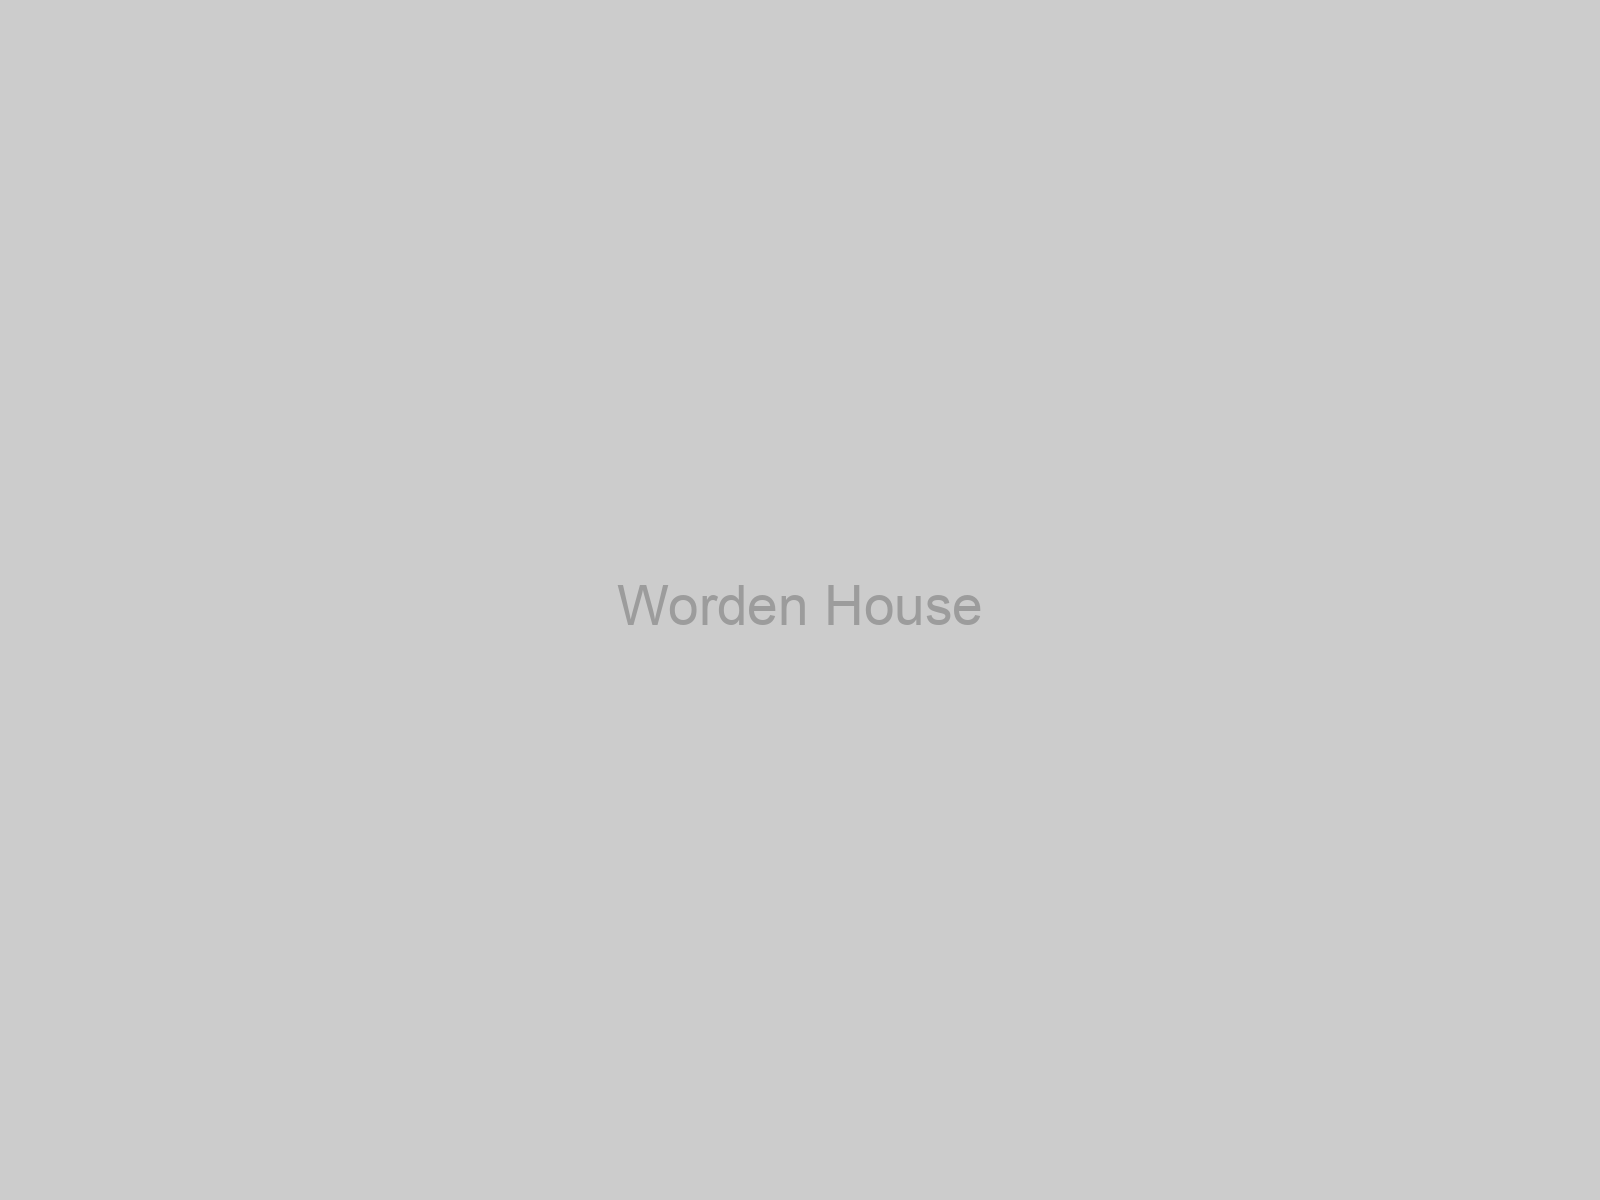 Worden House